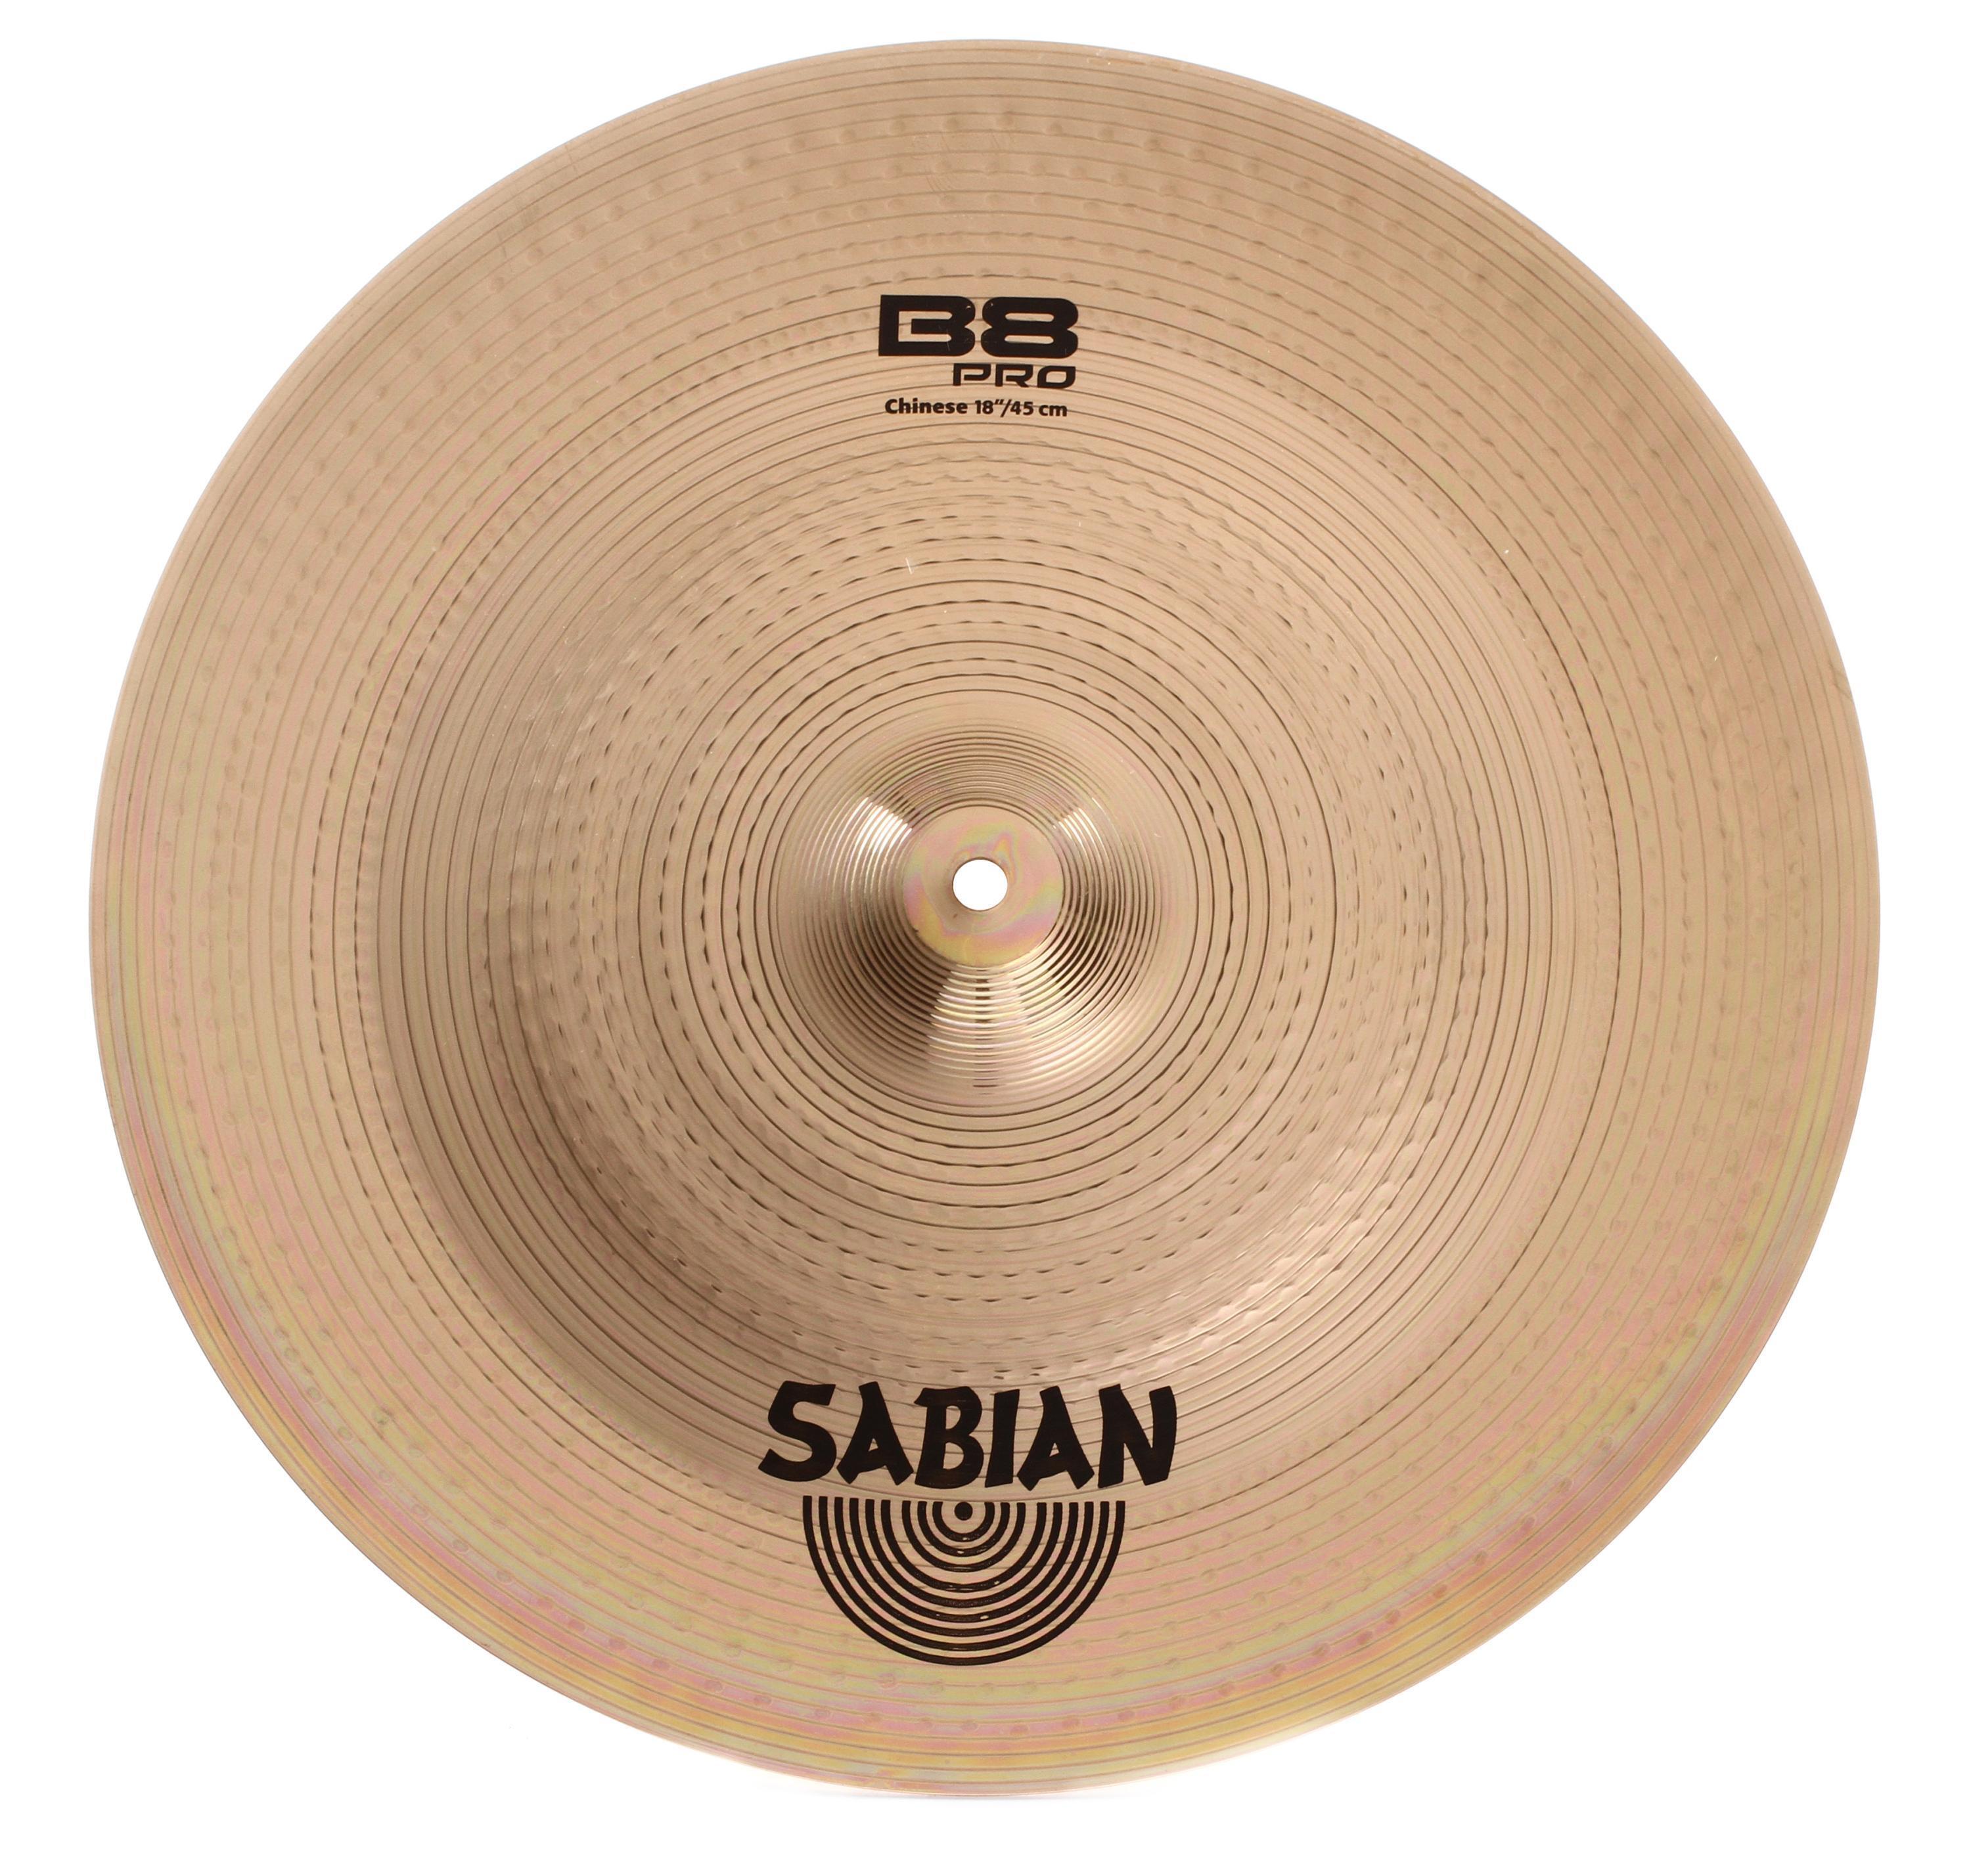 Sabian B8 Pro Chinese Cymbal - 18